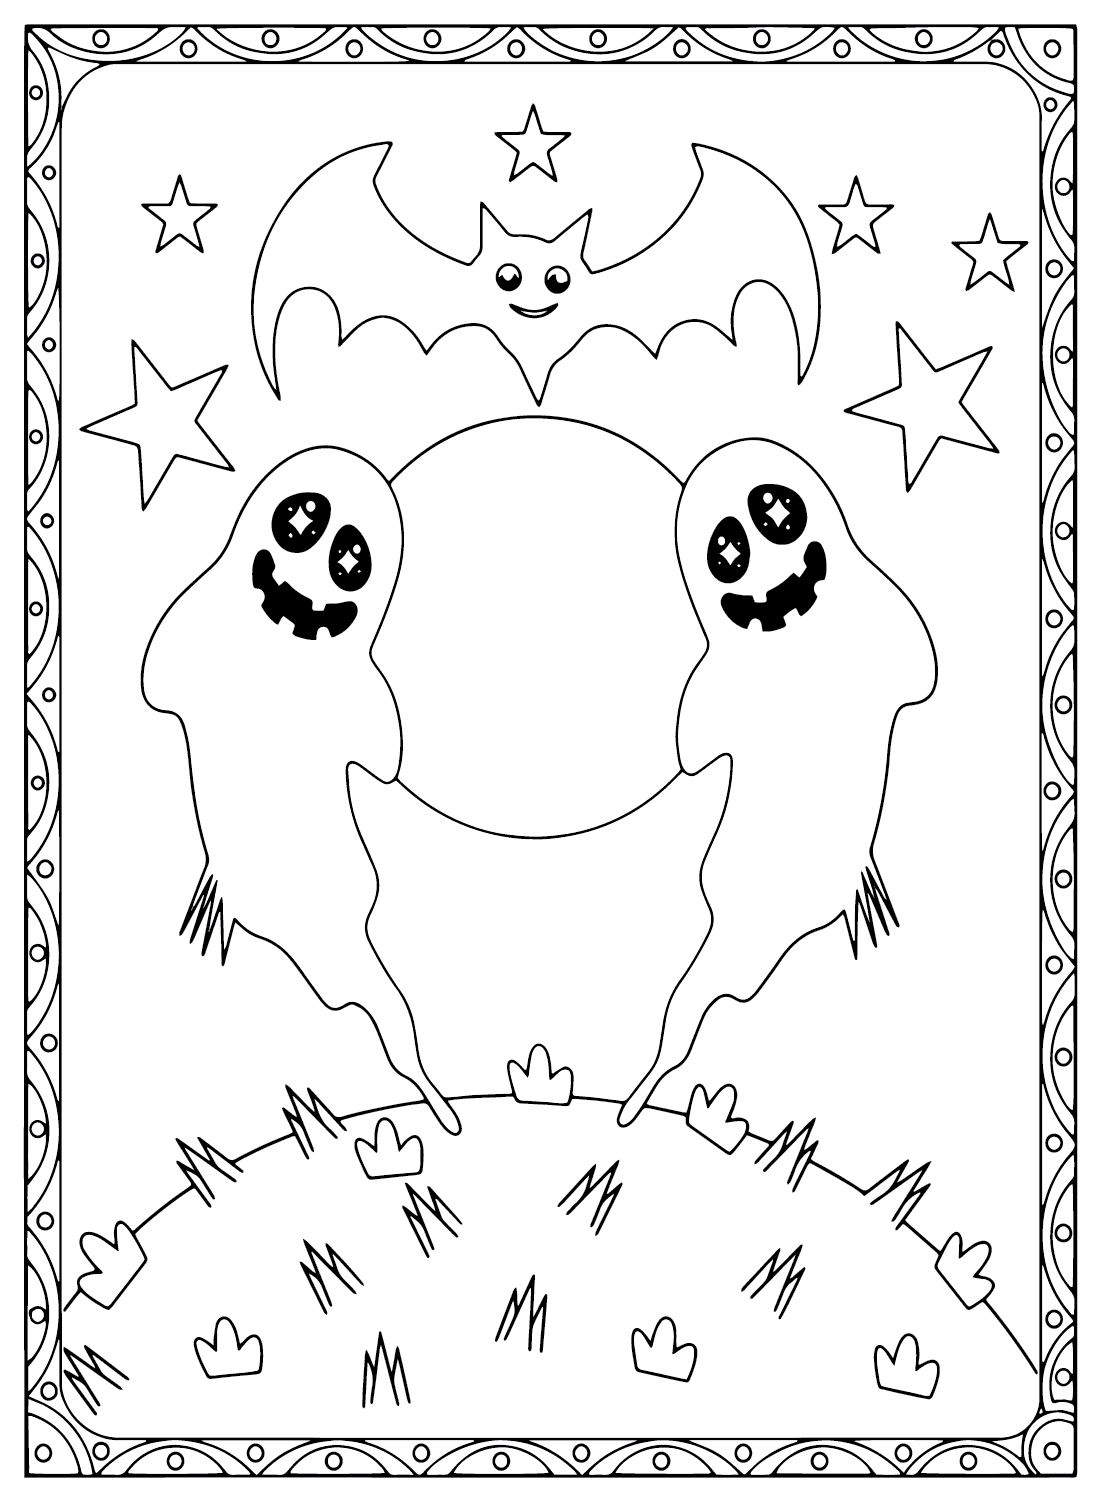 Página para colorear de fantasmas gratis de Ghost